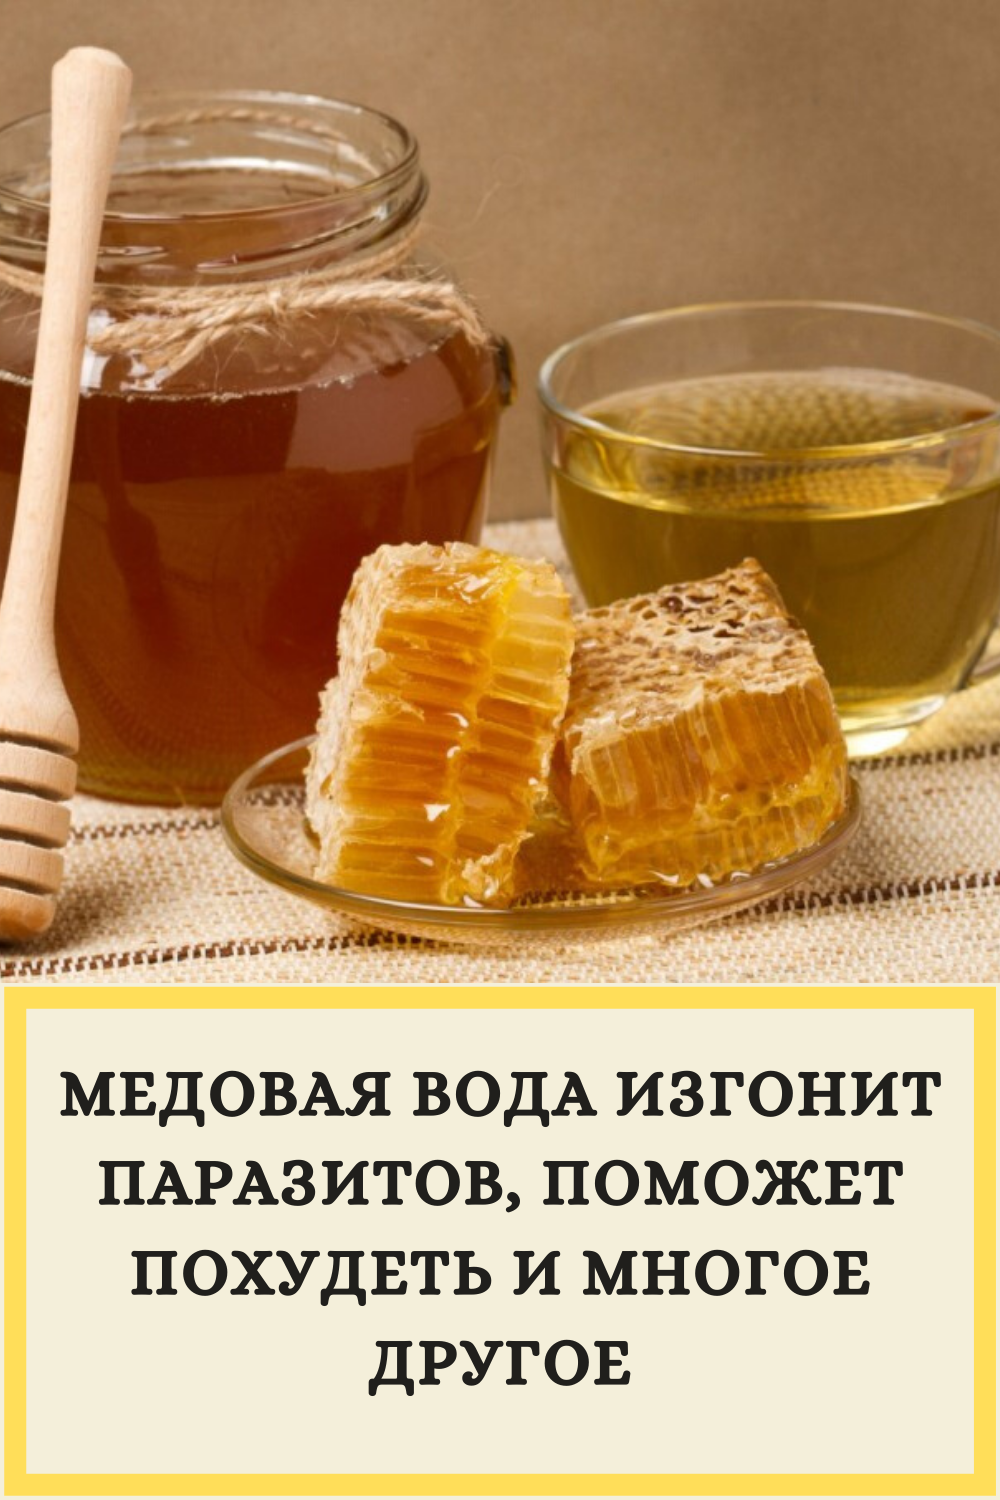 Вода с медом отзывы. Мед фото. Медовая вода изгонит паразитов. Медовая вода от паразитов. Чай с медом.